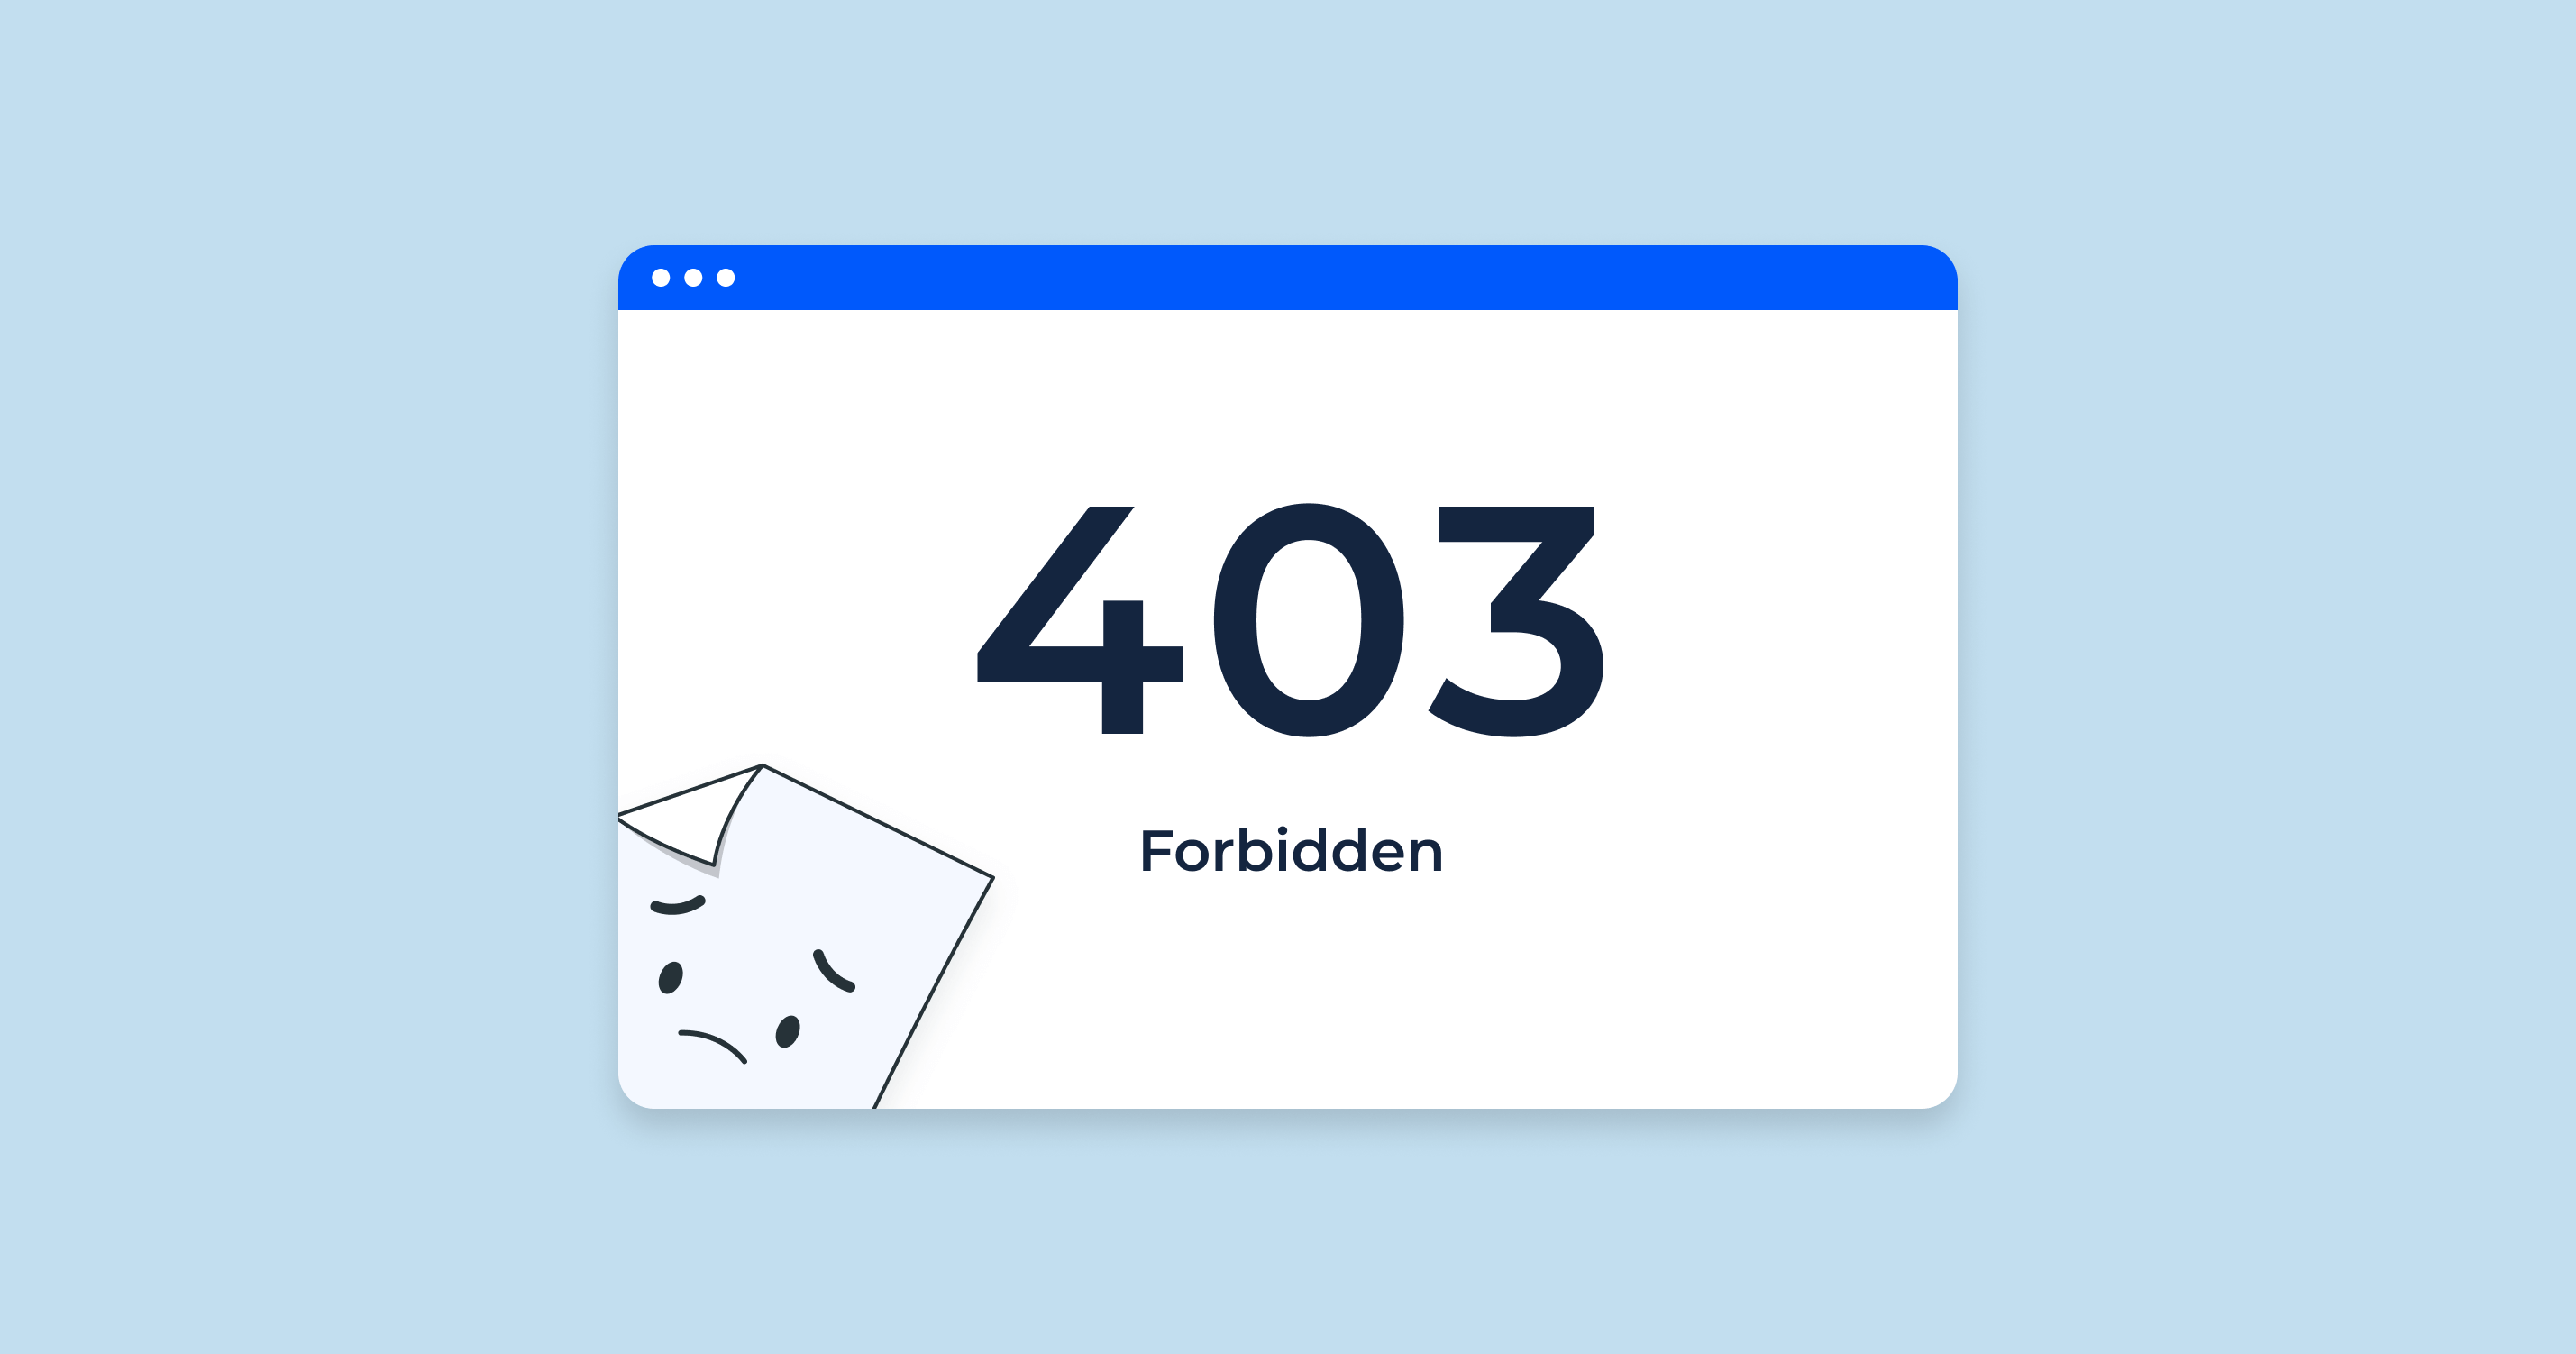 Troubleshooting - 403 Forbidden error